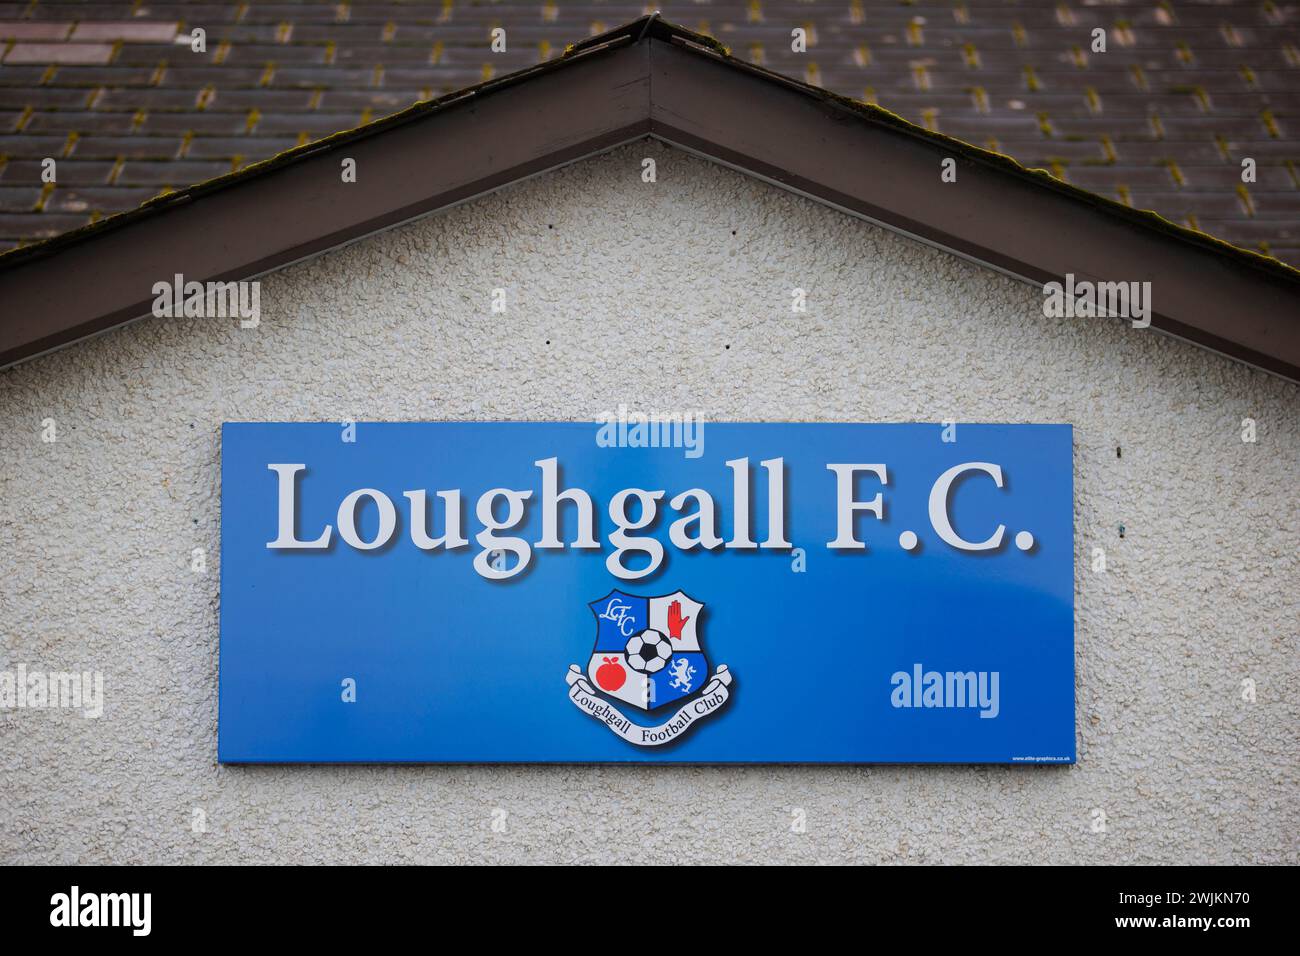 Une vue générale d'un panneau pour le Loughgall Football Club près d'Armagh dans le comté d'Armagh dont le centenaire Hilbert Willis a été un partisan de longue date et a été auparavant le gardien du club pendant 30 ans et en tant que président pendant près d'une décennie. Banque D'Images